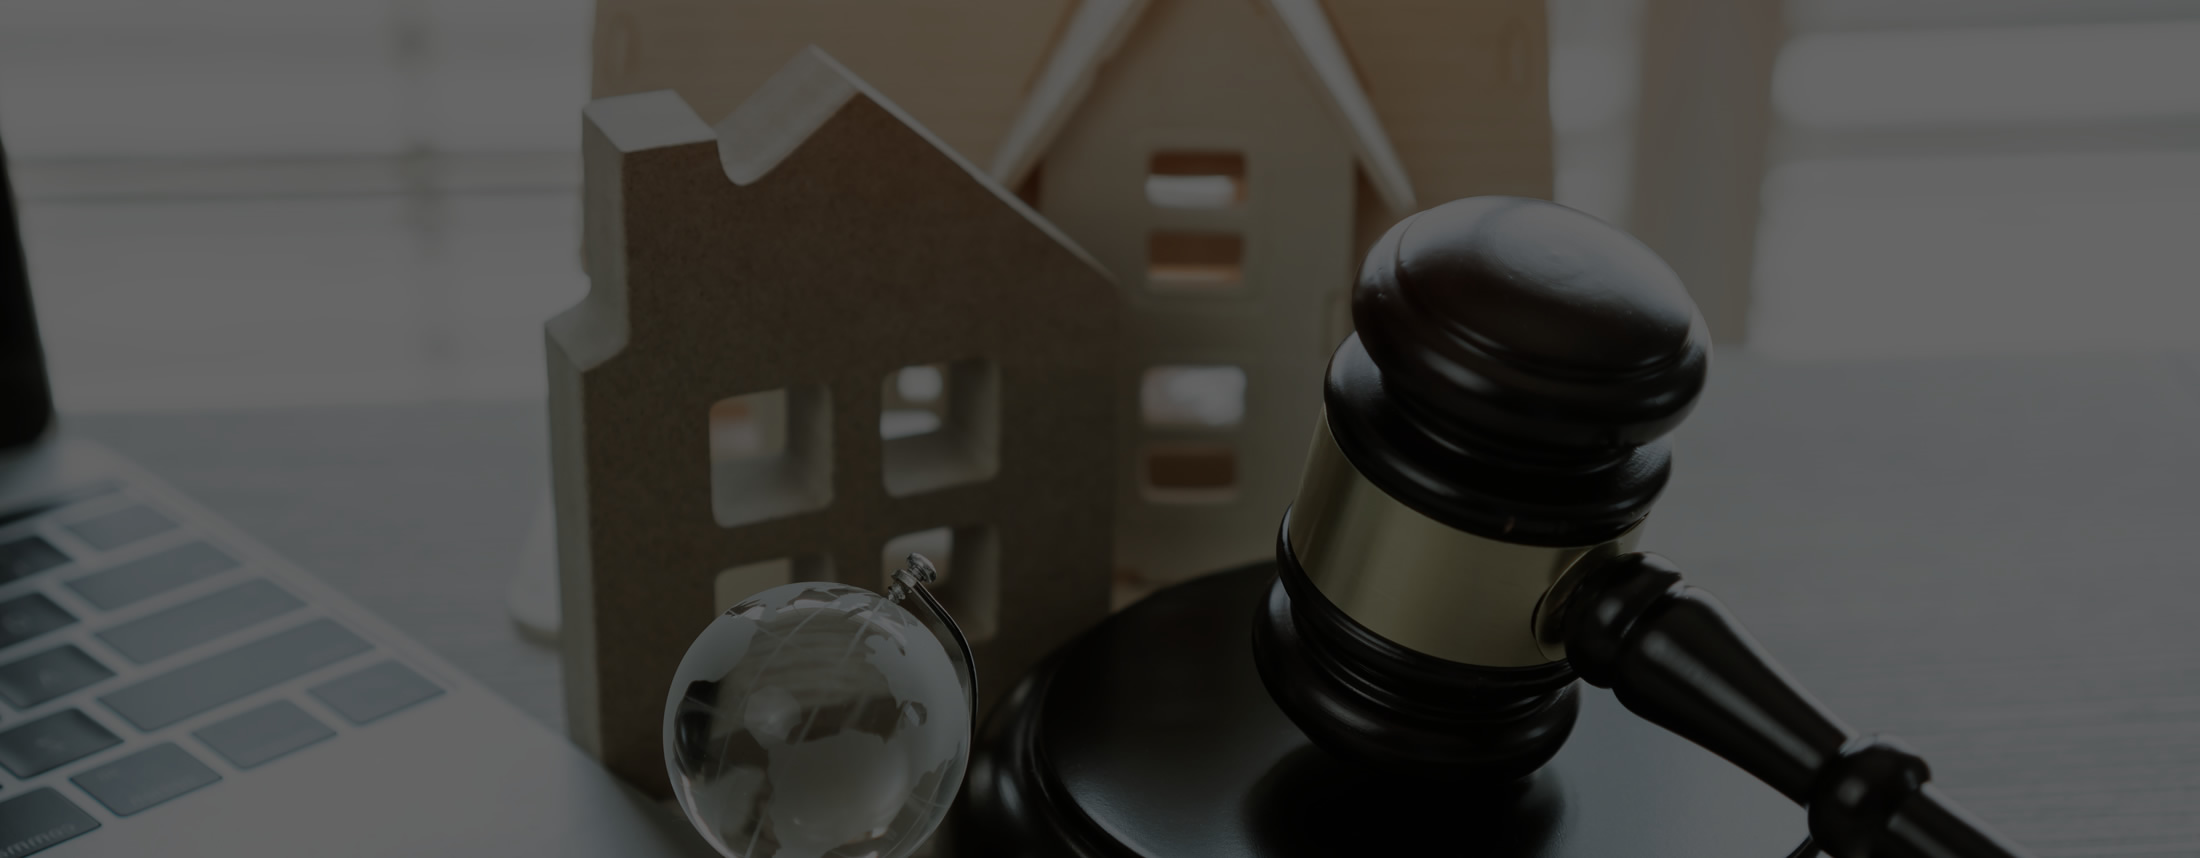 Diploma de Derecho en Negocios Inmobiliarios y de la Construcción